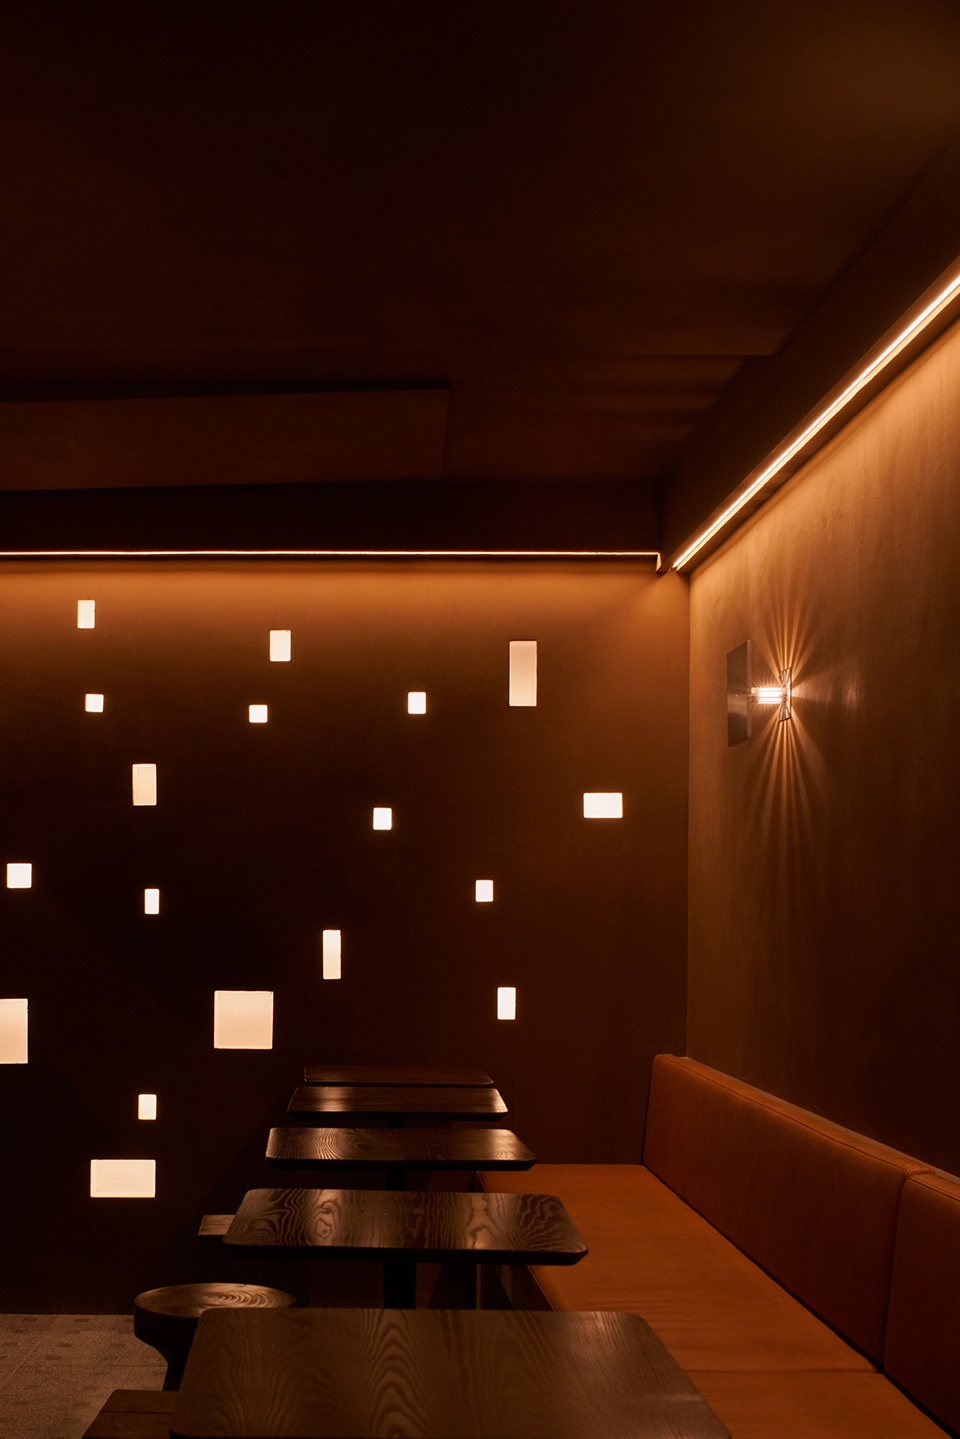 酒吧設計,咖啡廳設計,上海酒吧設計,上海咖啡廳設計,酒吧設計案例,酒館設計,La cour酒吧,La cour咖啡廳,上海La cour酒吧,All Design Studio